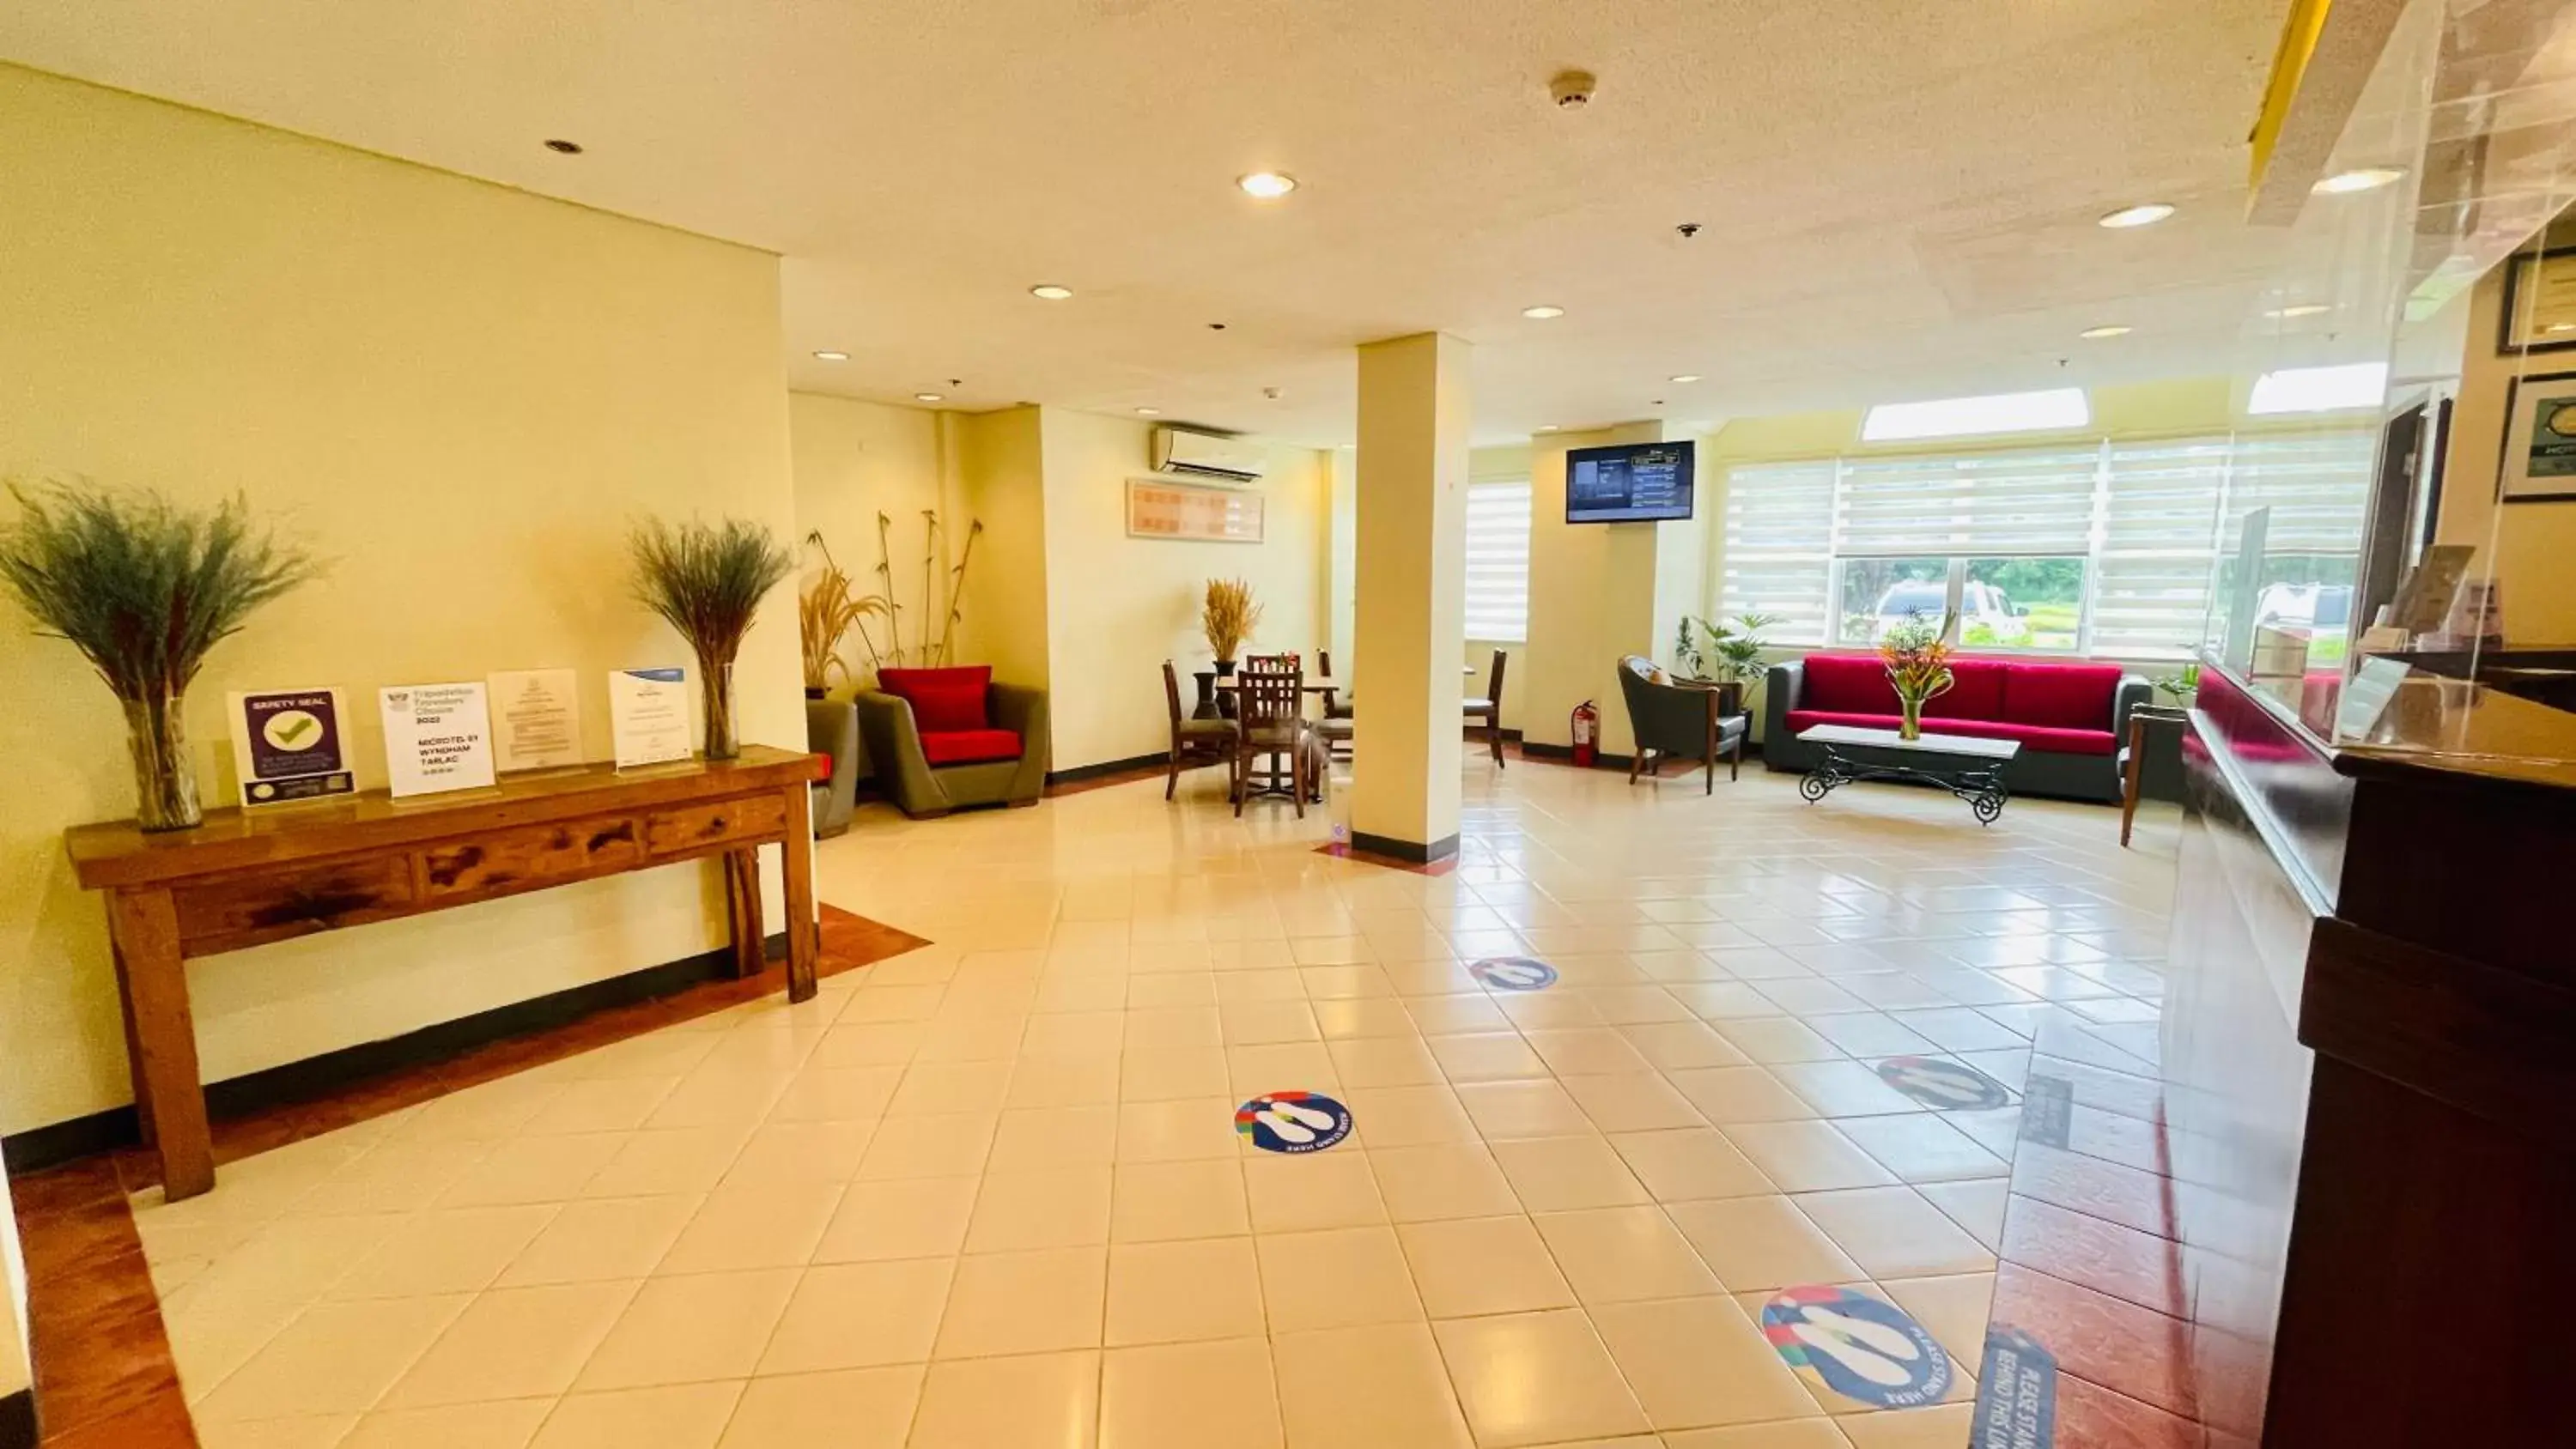 Lobby or reception, Lobby/Reception in Microtel by Wyndham Tarlac